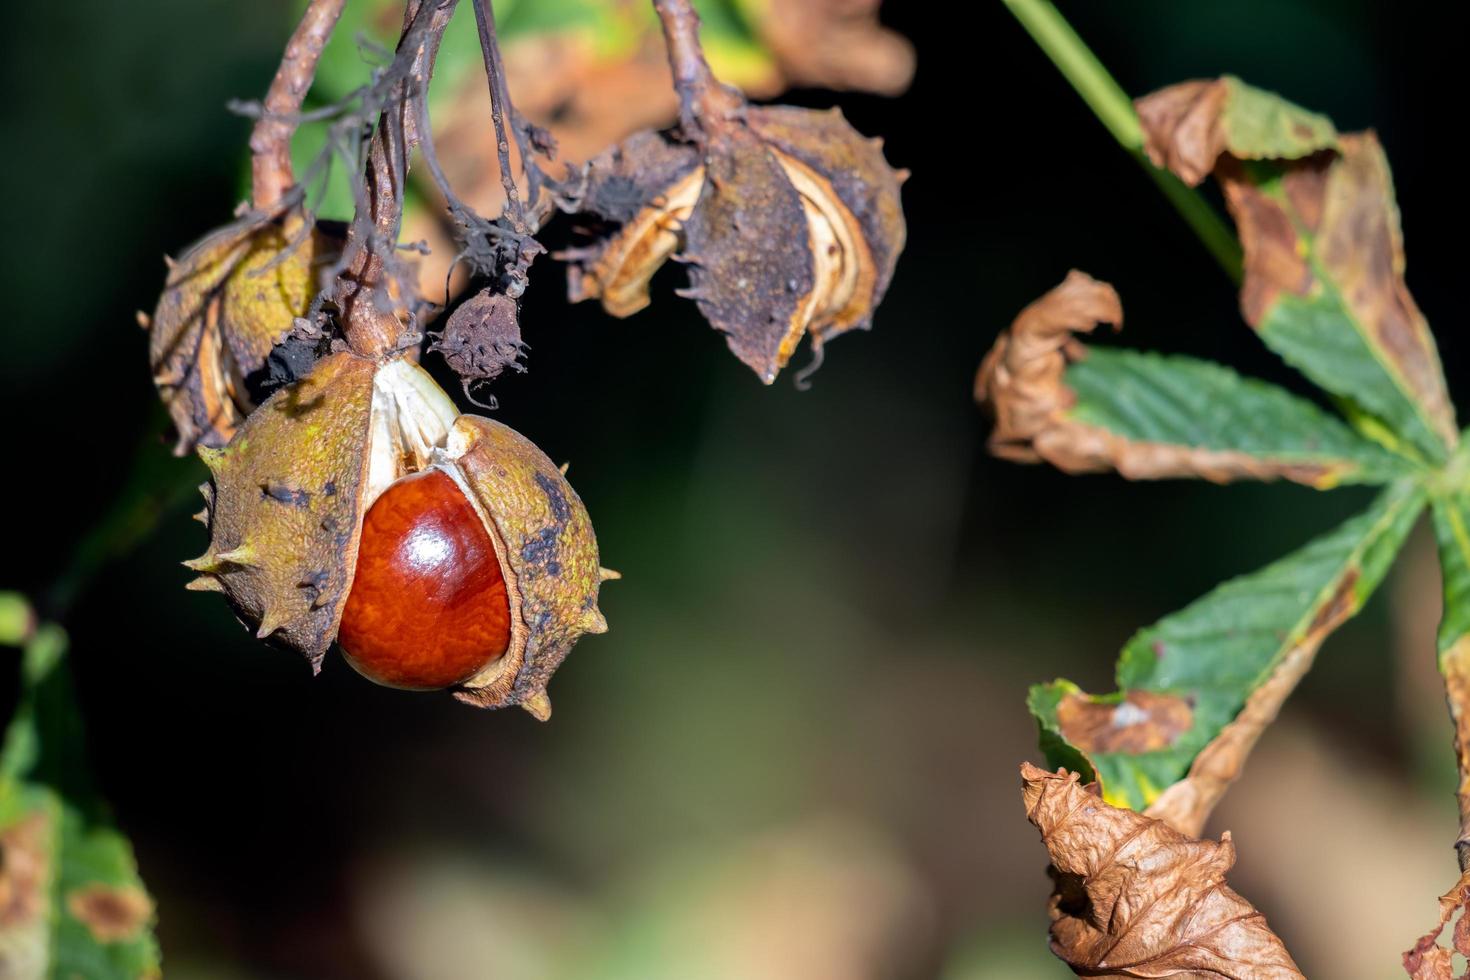 fruto maduro da castanheira-da-índia comumente chamada de conkers foto